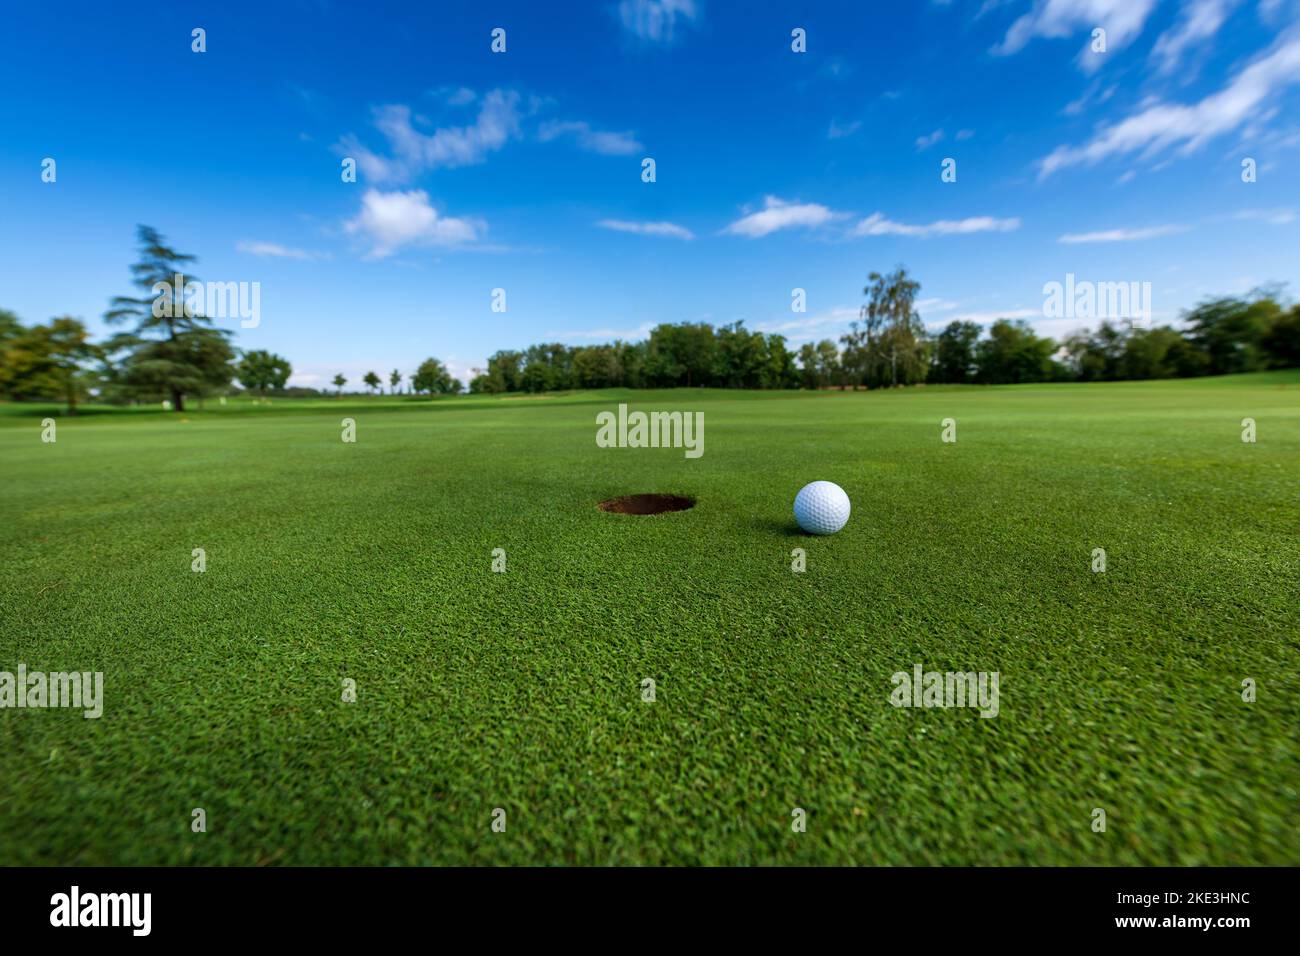 Sfera bianca disposta sull'erba verde vicino al foro nel terreno contro cielo blu nuvoloso durante la partita di golf Foto Stock